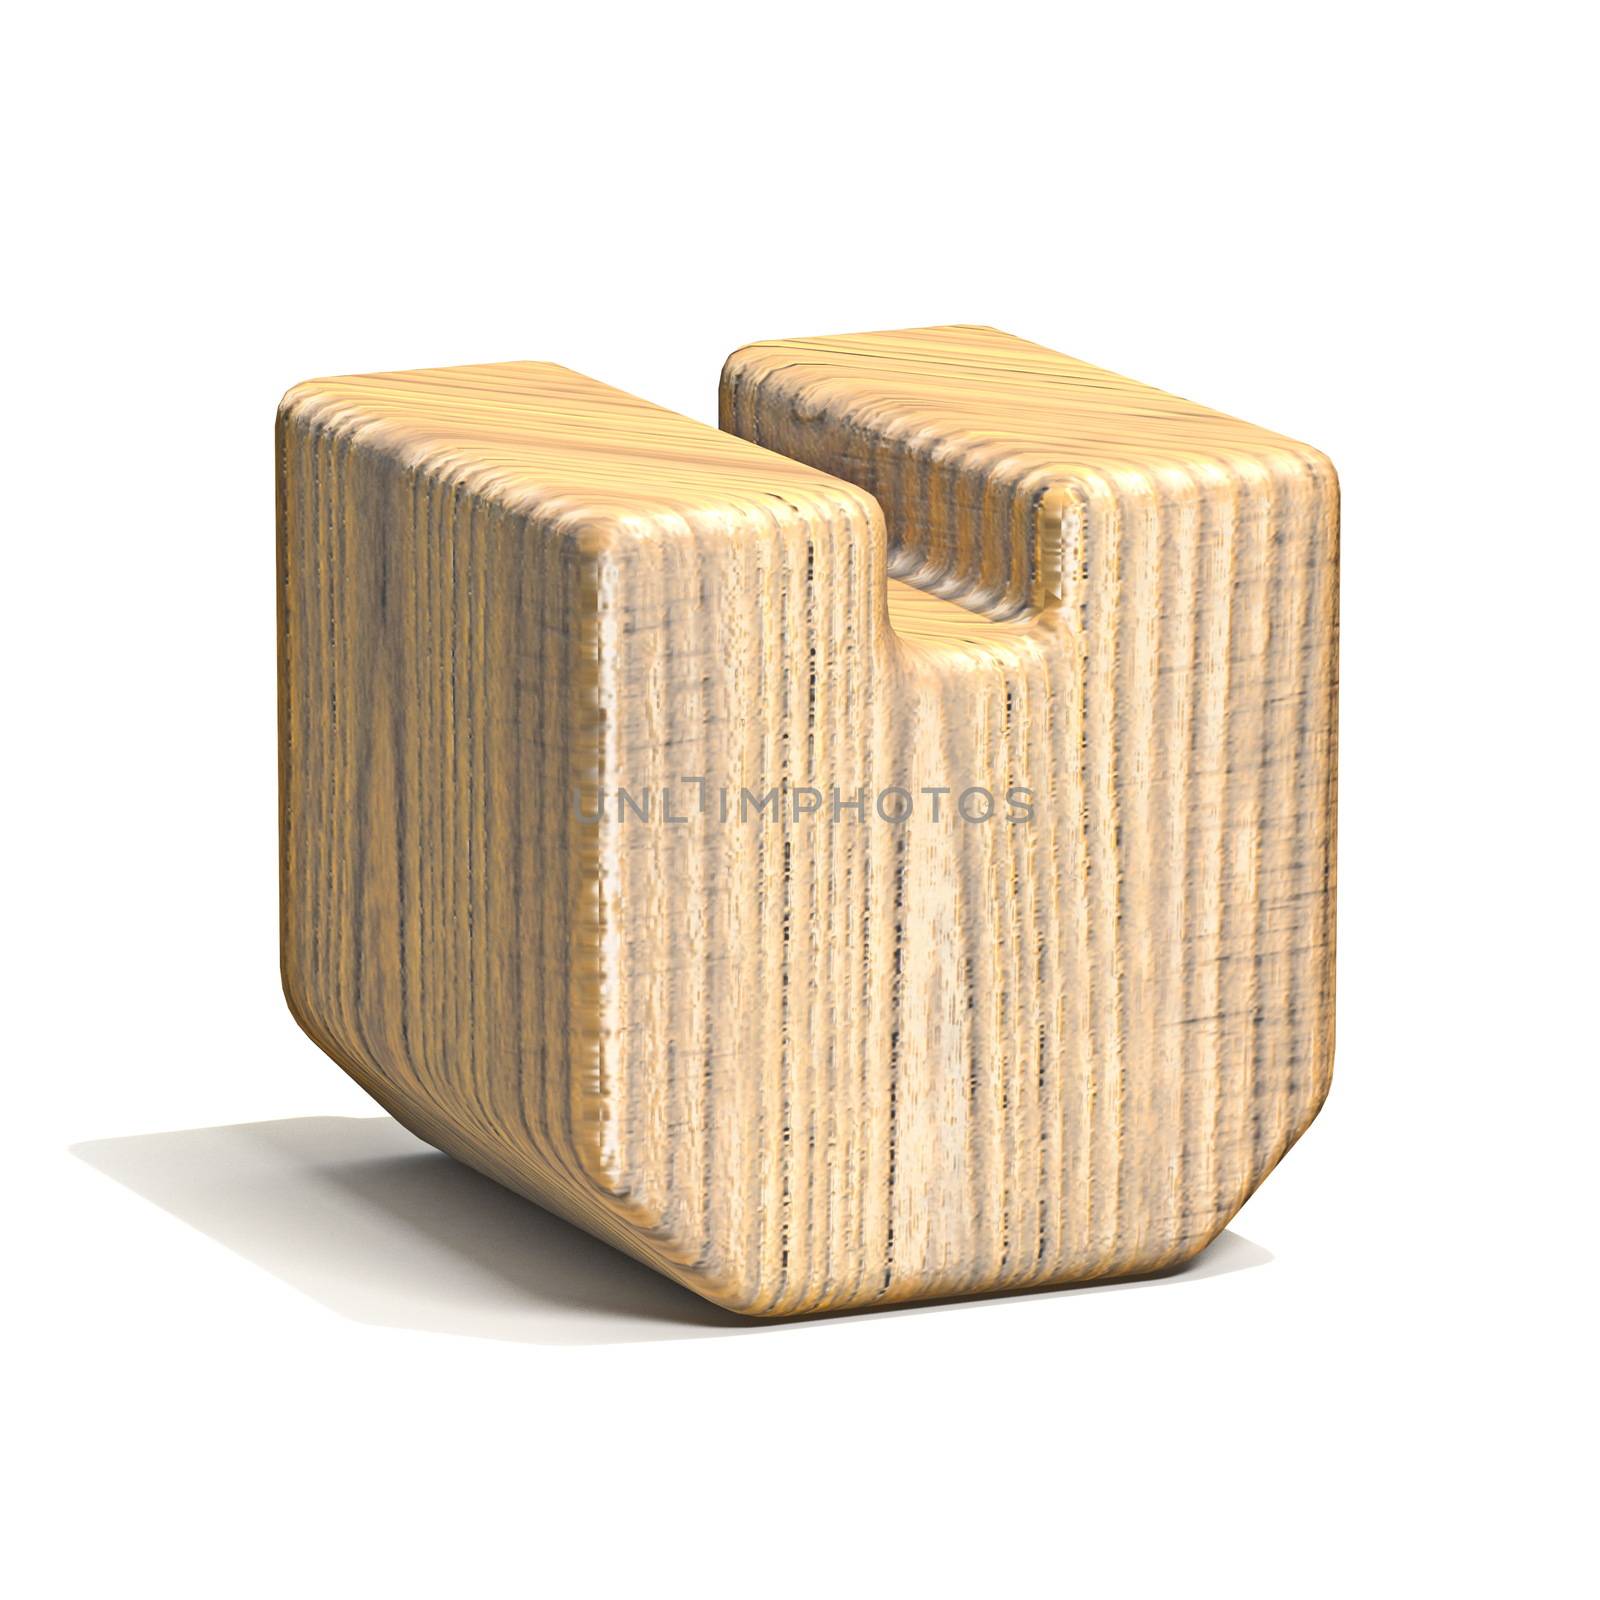 Solid wooden cube font Letter V 3D by djmilic